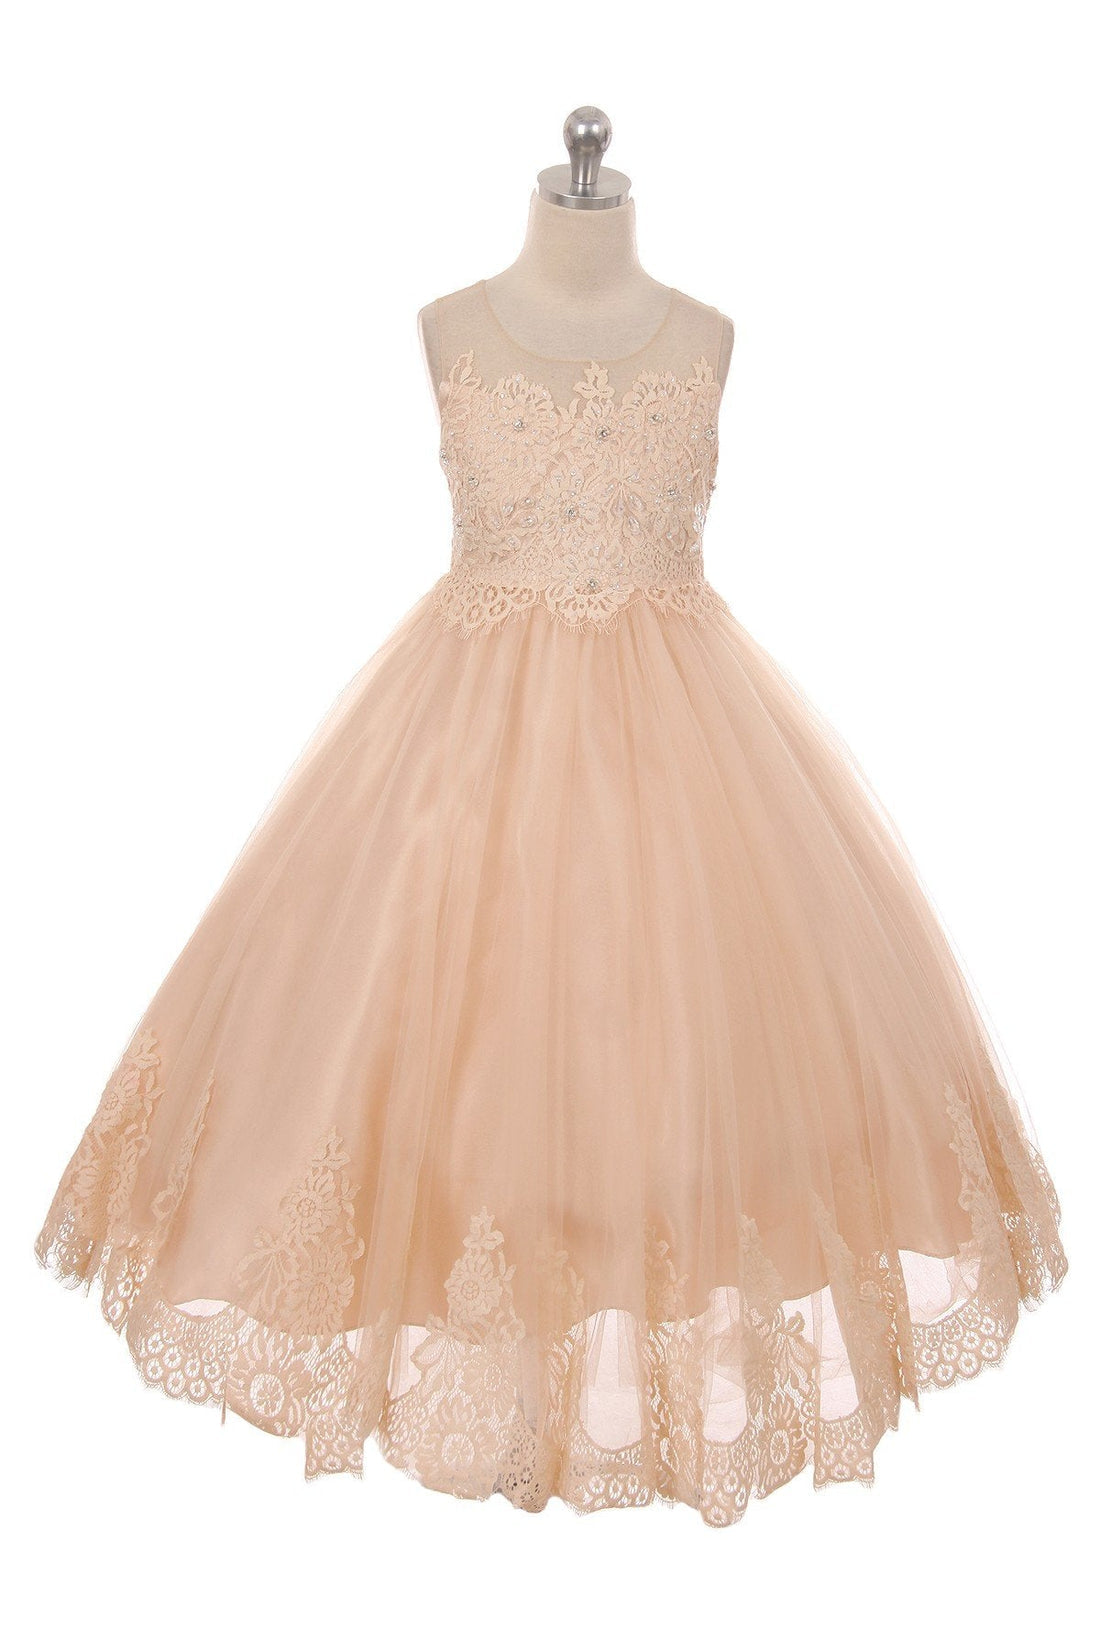 Vintage Rose_1 Girl Dress - Lace Applique Illusion Bateau Dress - AS7007 Kids Dream